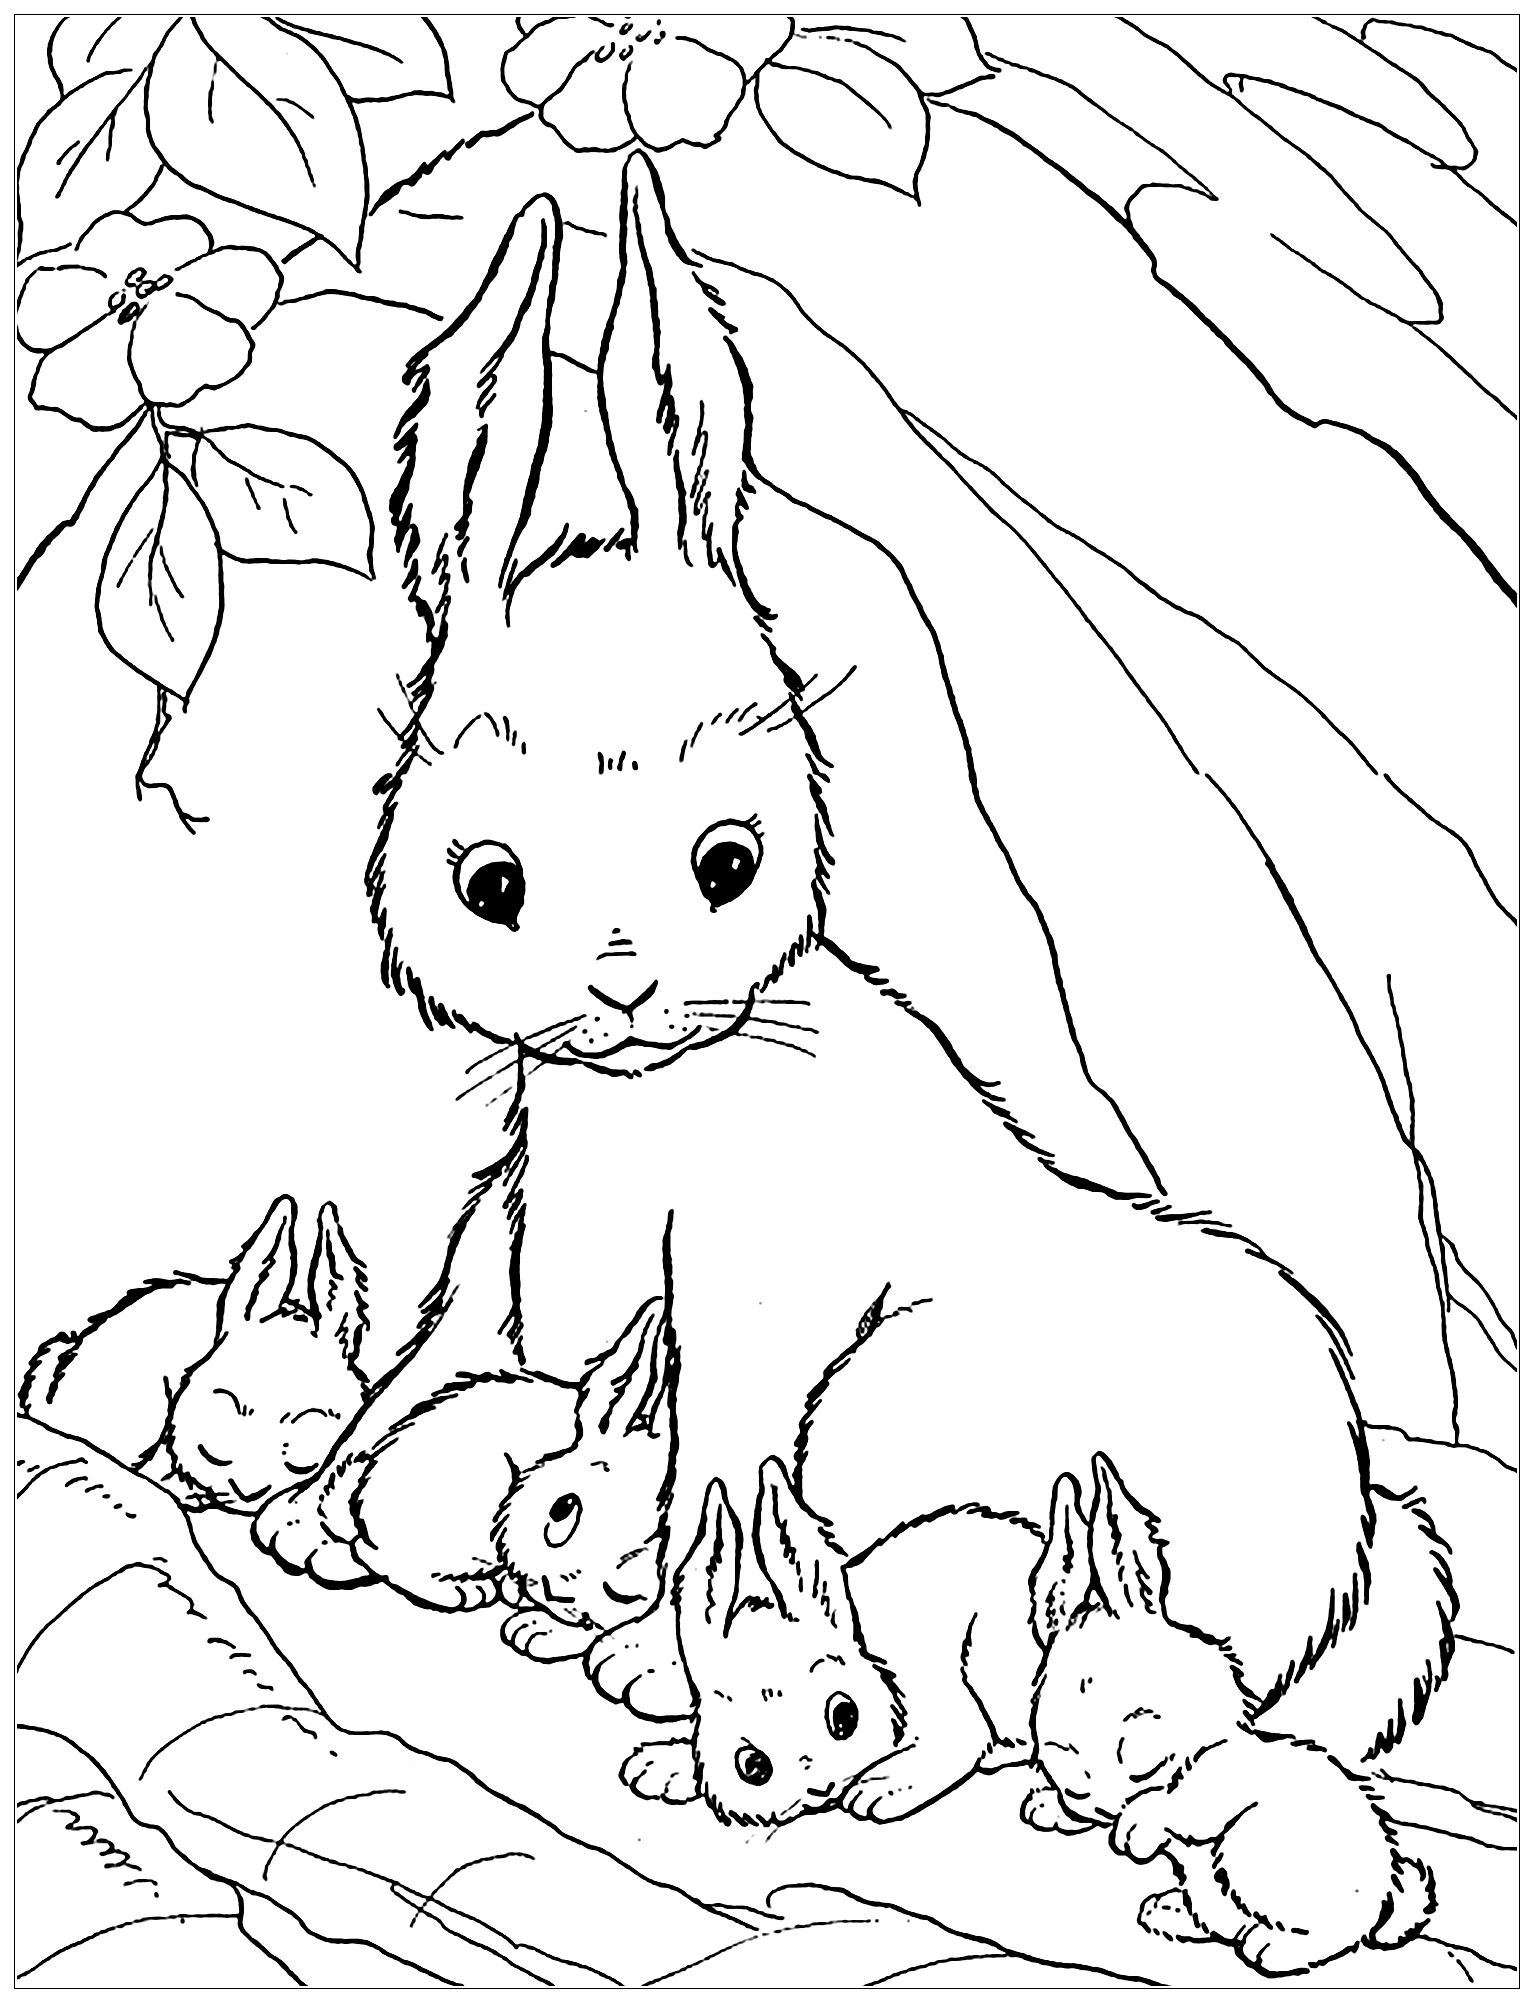 Image de lapin à colorier, facile pour enfants